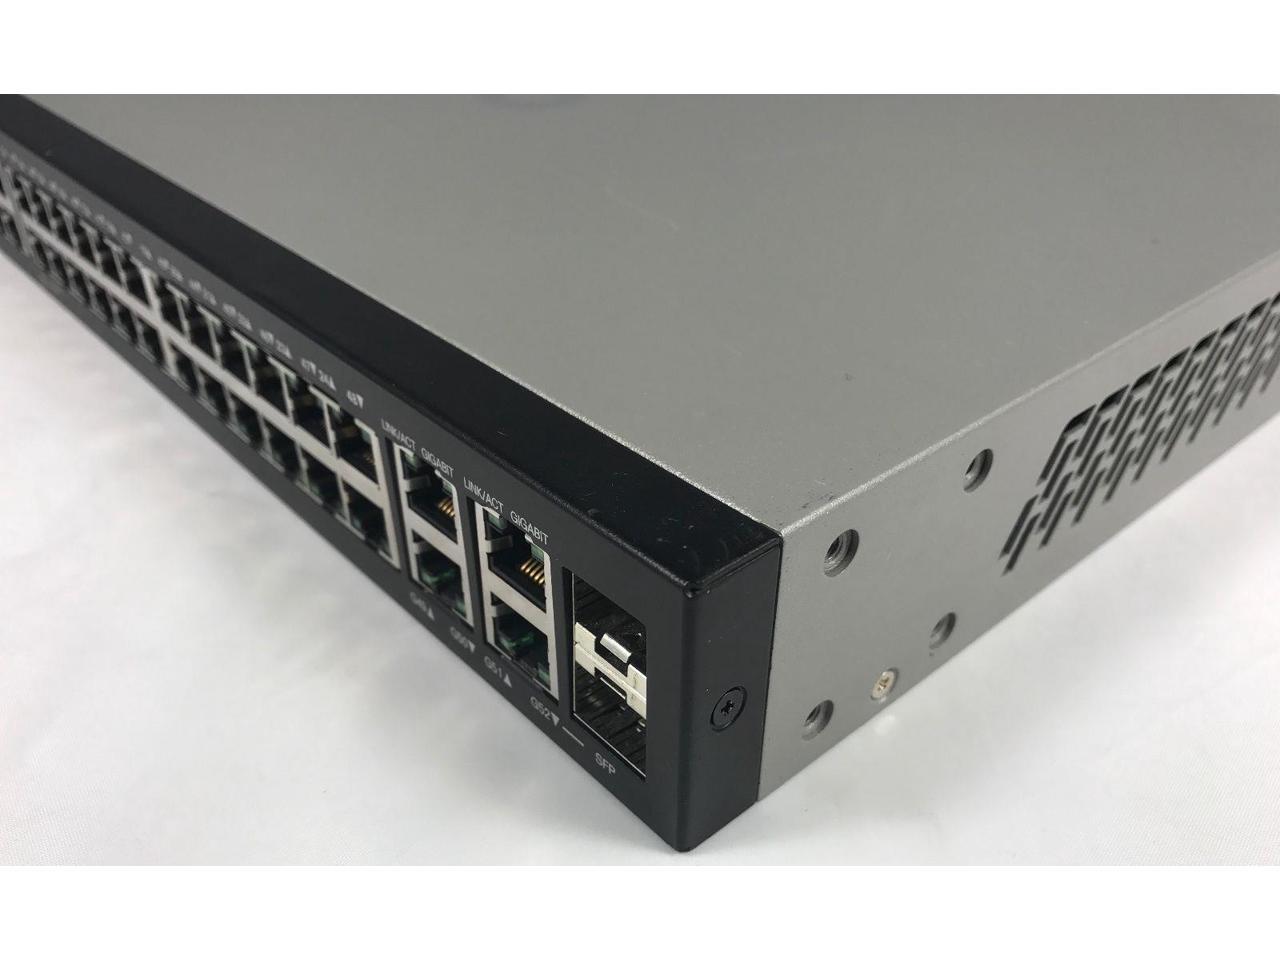 Cisco SG300-52 52 Ports Gigabit Managed Rack Mountabke Switch SRW2048-K9